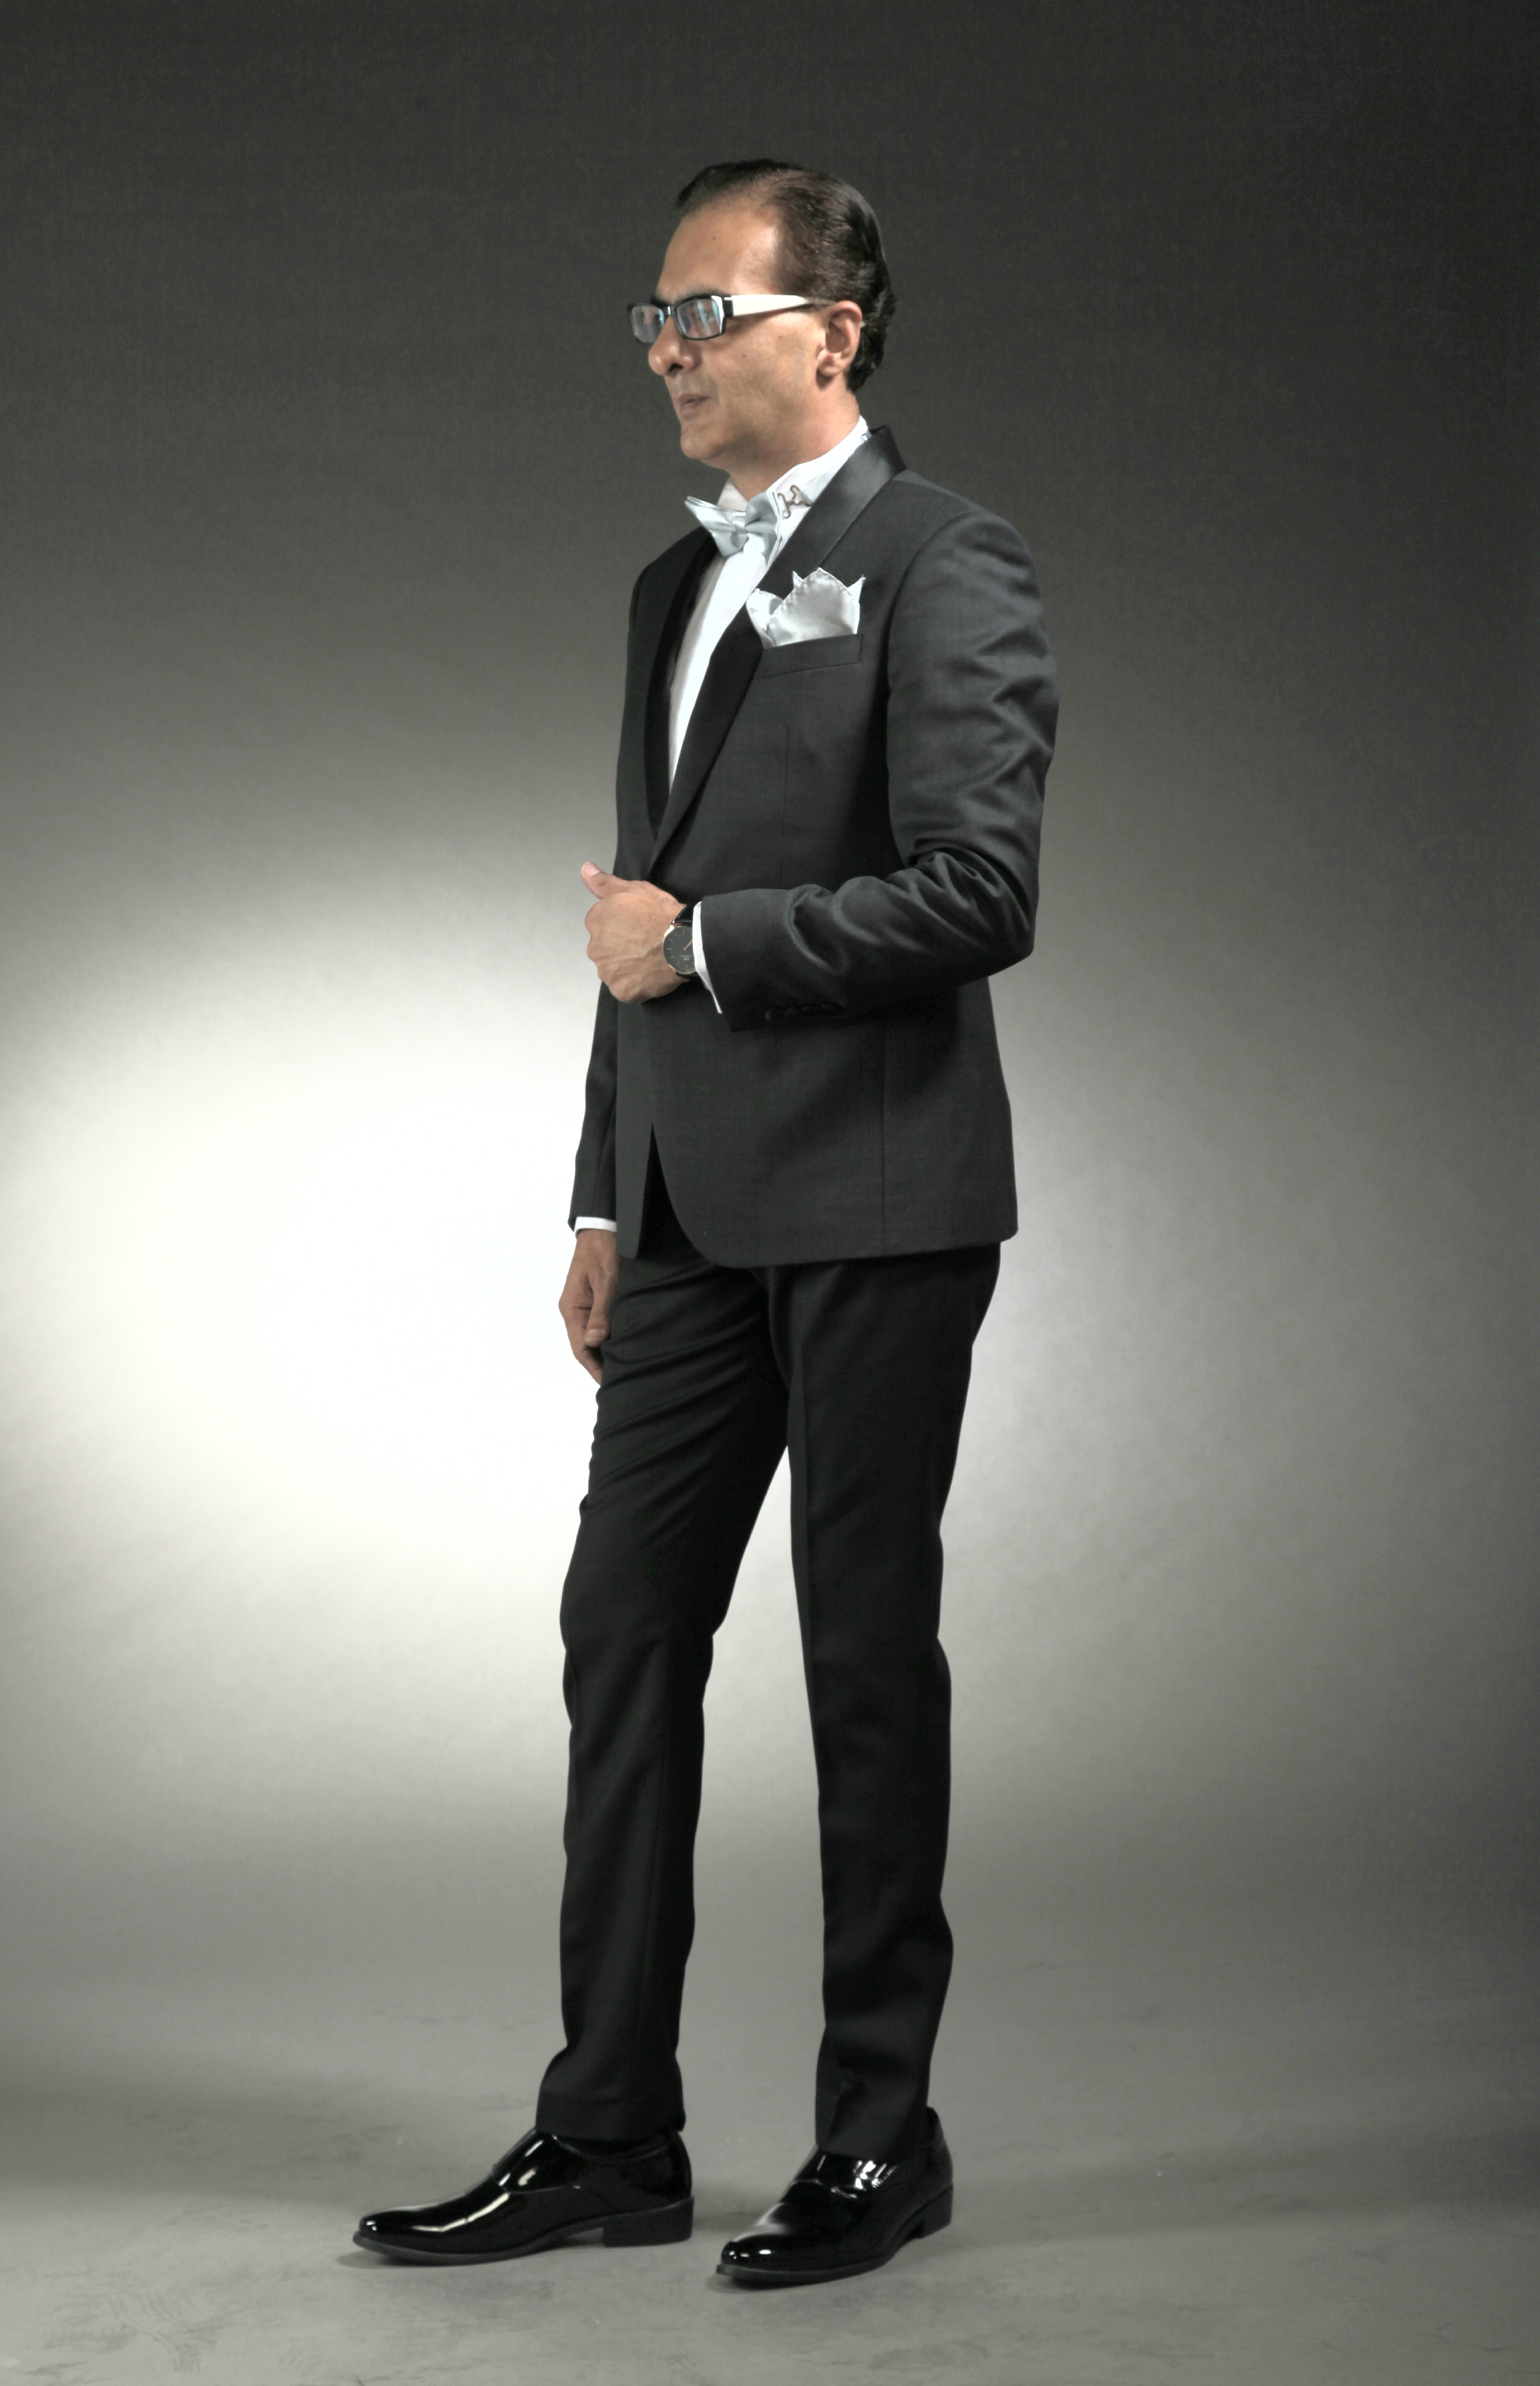 MST-5029-02-rent_rental_hire_tuxedo_suit_black_tie_suit_designer_suits_shop_tailor_tailors_singapore_wedding